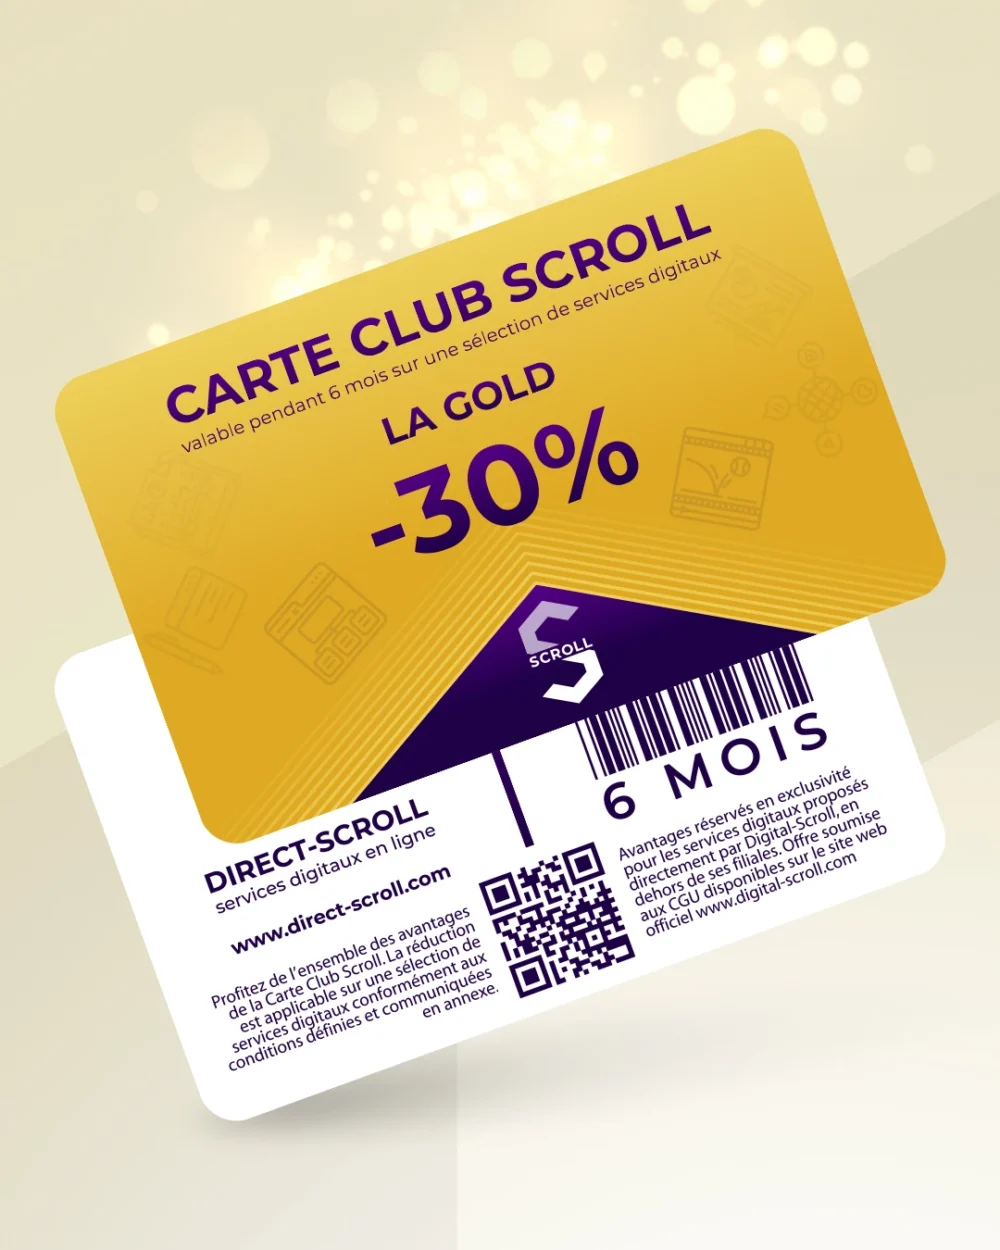 Direct-Scroll | e-Carte Club Gold -30% de Réduction sur toute la Boutique | e-Cartes Club | Slide 1 | Pack Digital Offert avec un Abonnement de 6 Mois à Notre e-Boutique de Templates pour Visuels Réseaux Sociaux